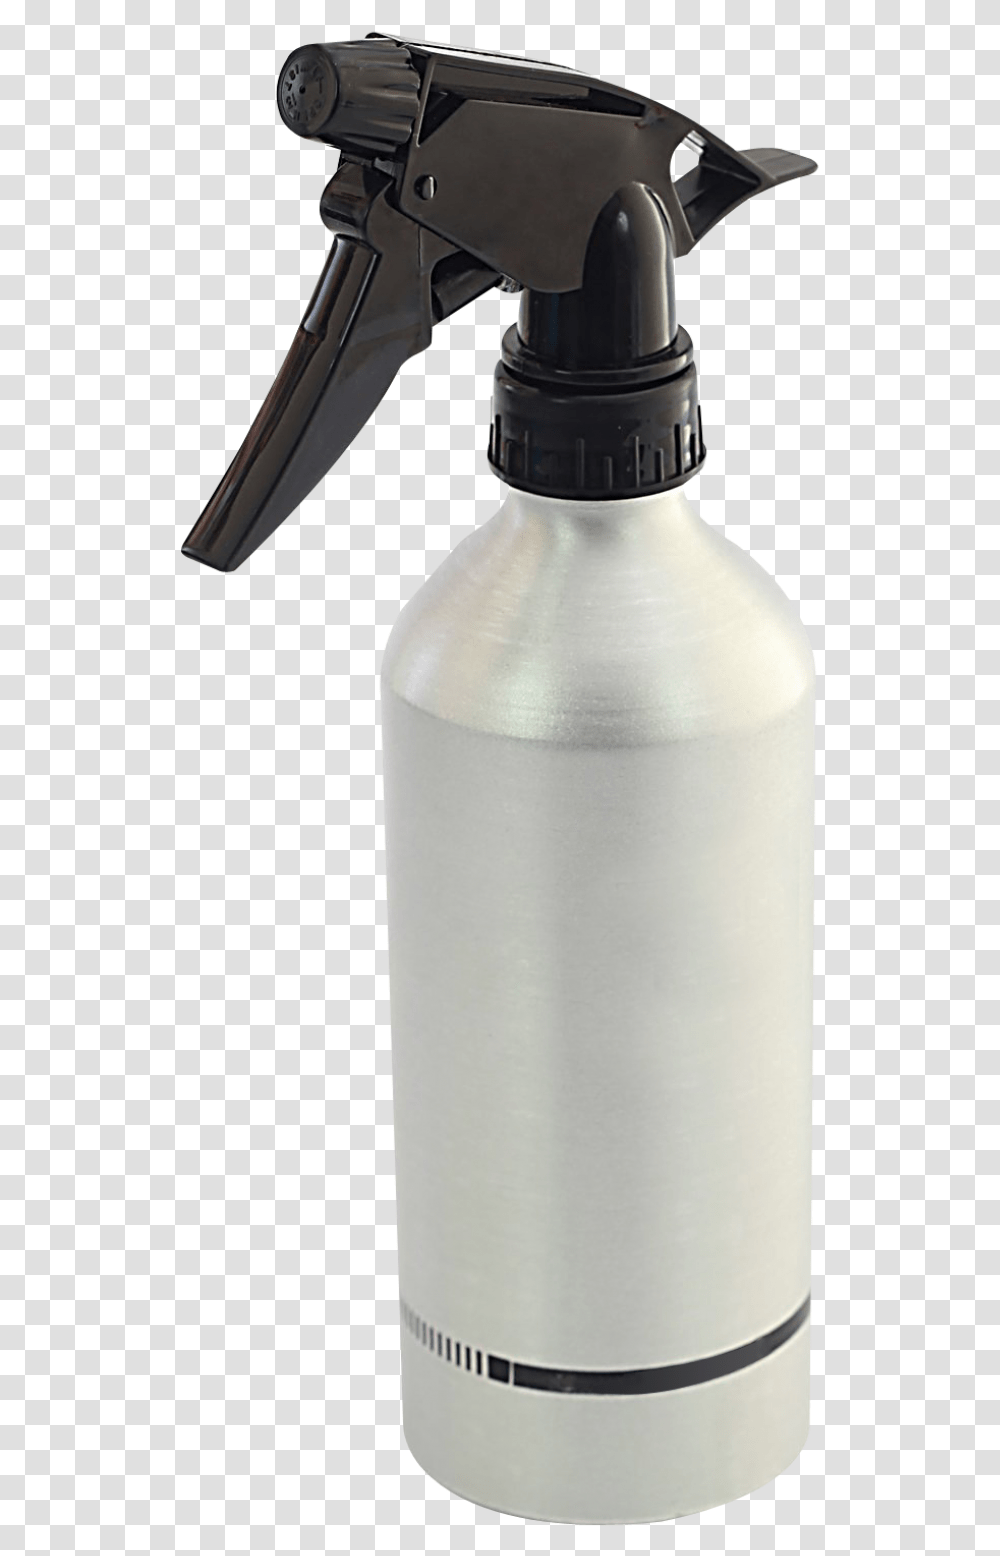 Spray Bottle Image Spray Bottle, Milk, Beverage, Drink, Shaker Transparent Png